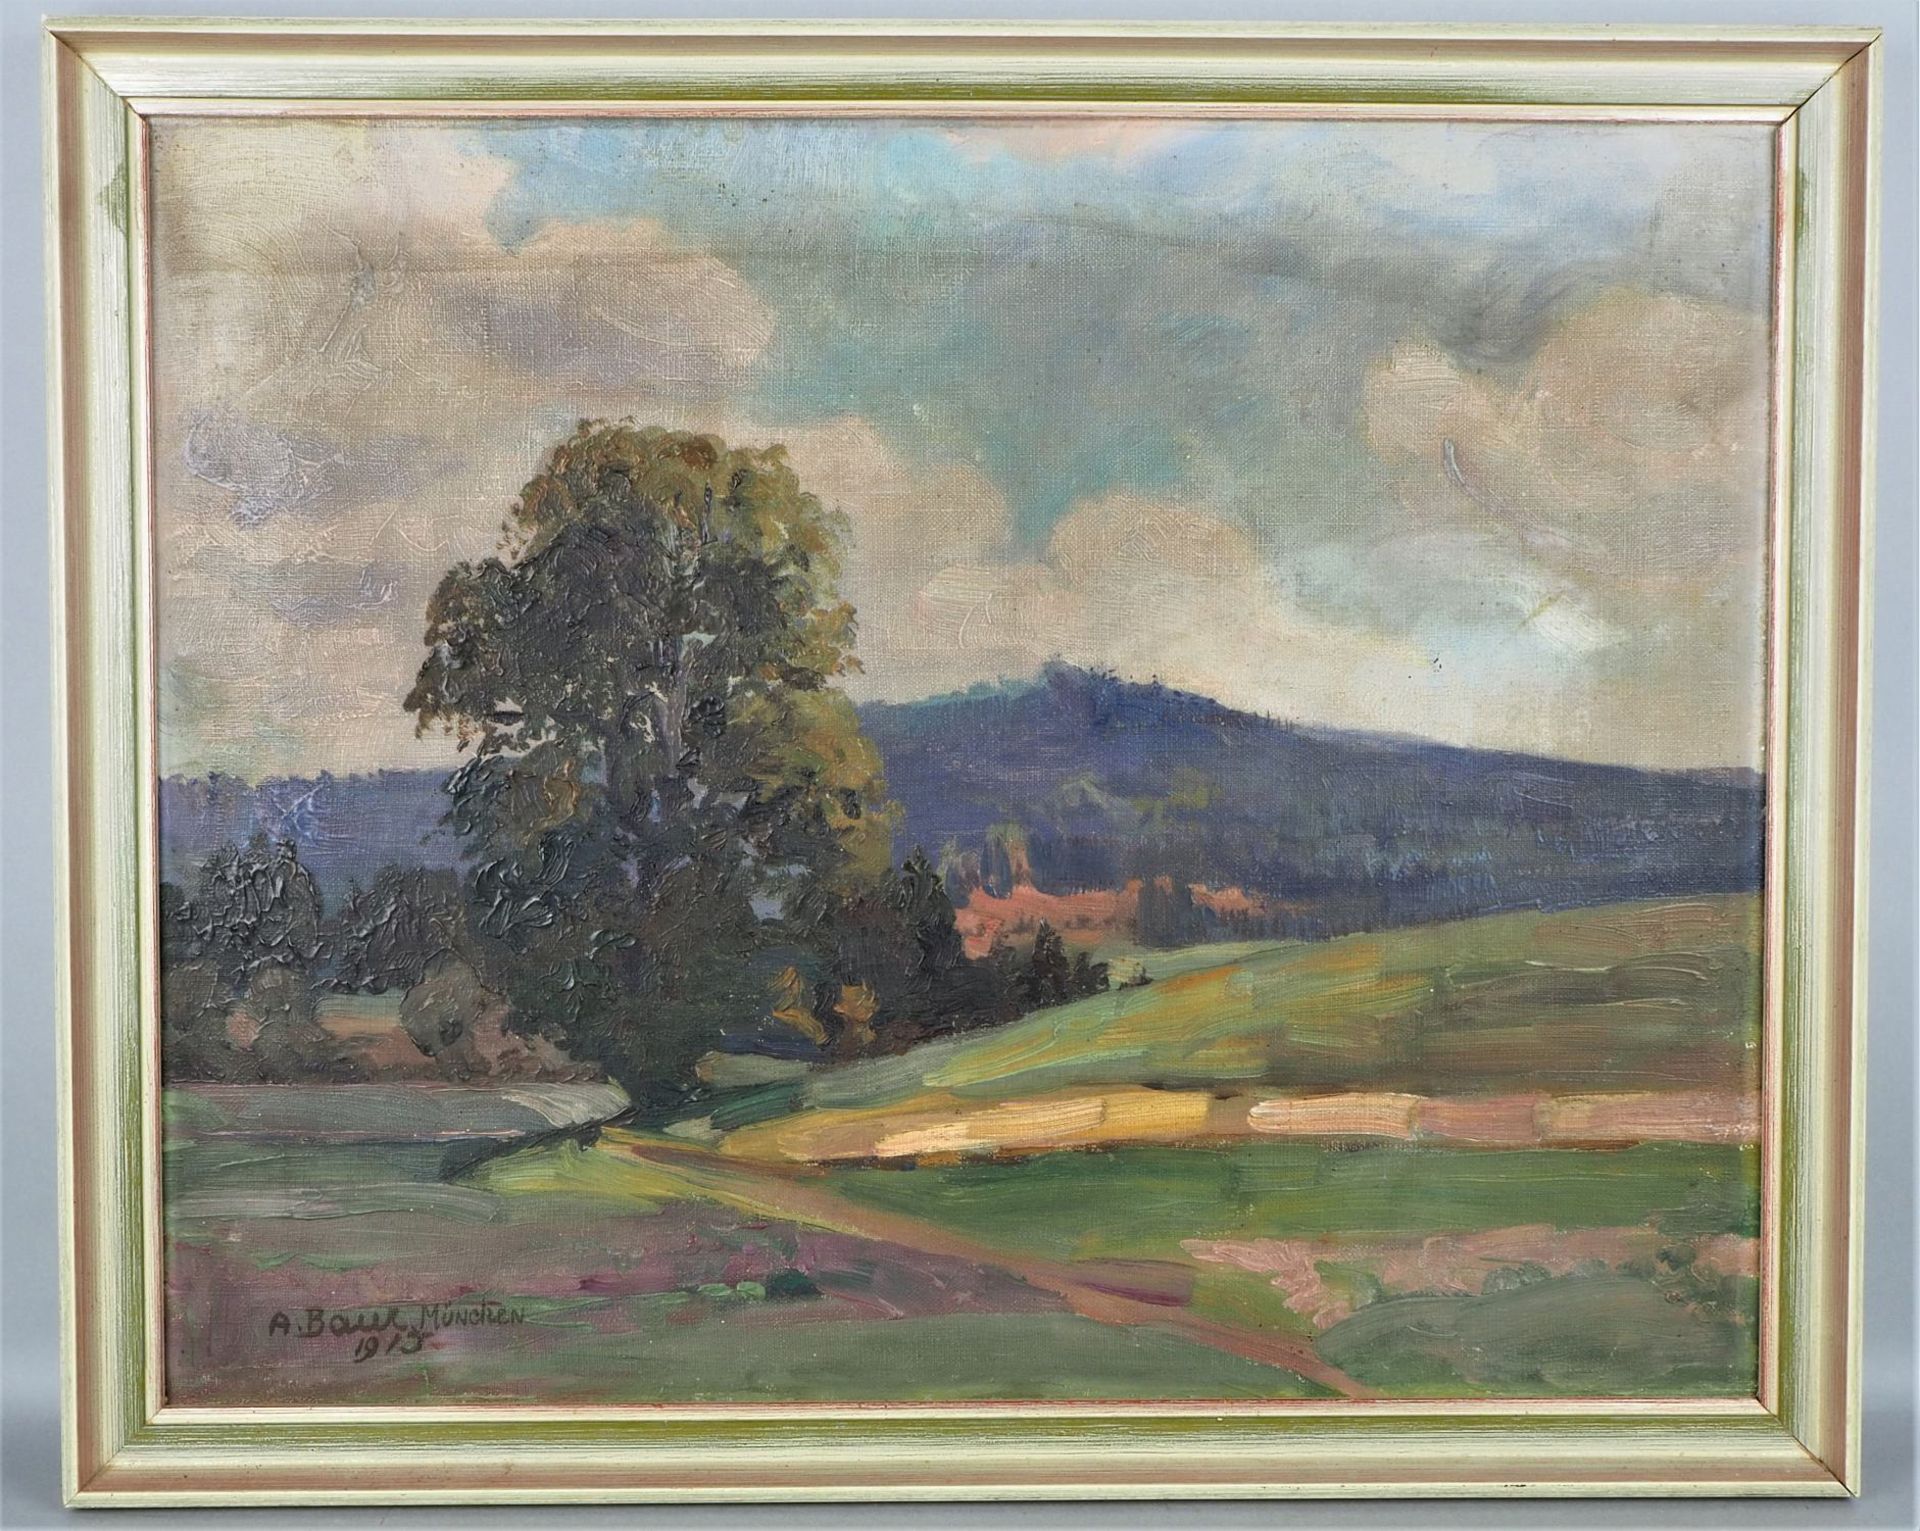 Anton Baur (1880, Biberach -1968, Munich), Landscape, 1915